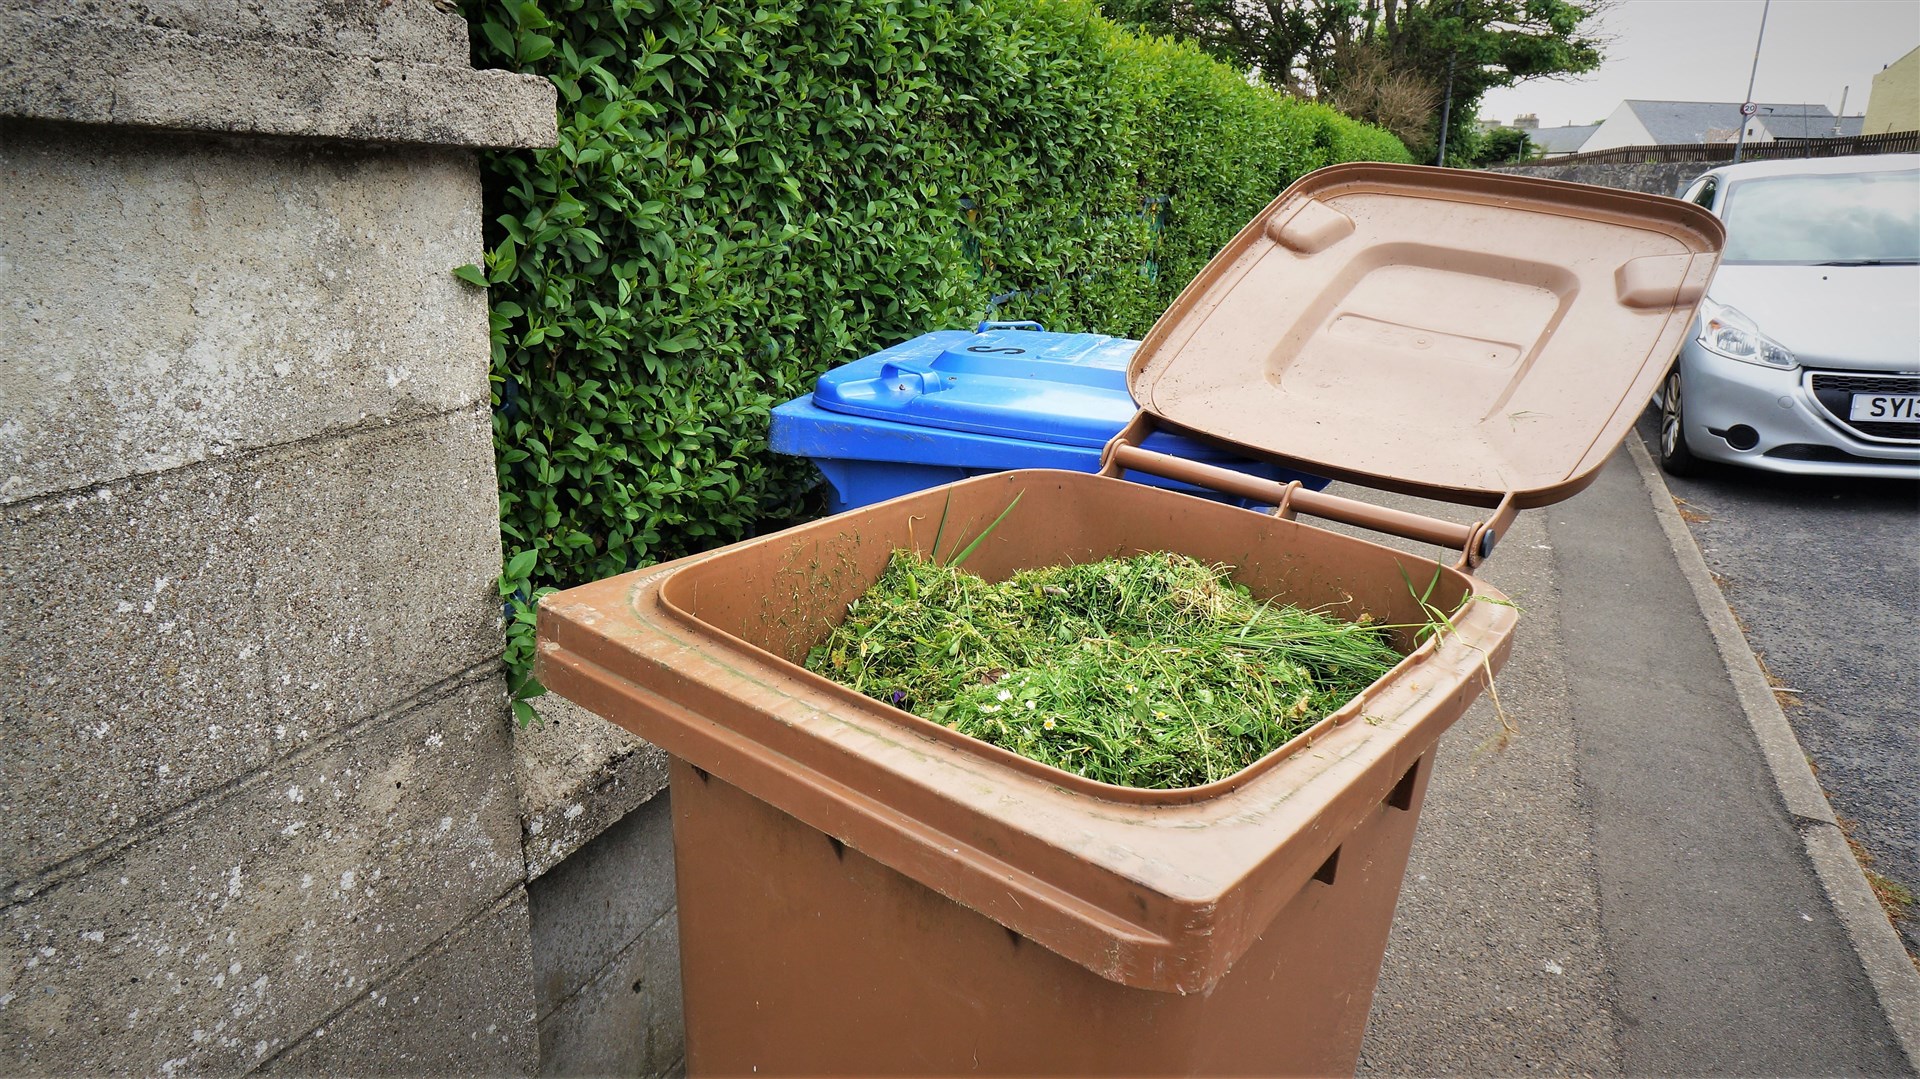 Garden waste bin in Wick. Picture: DGS